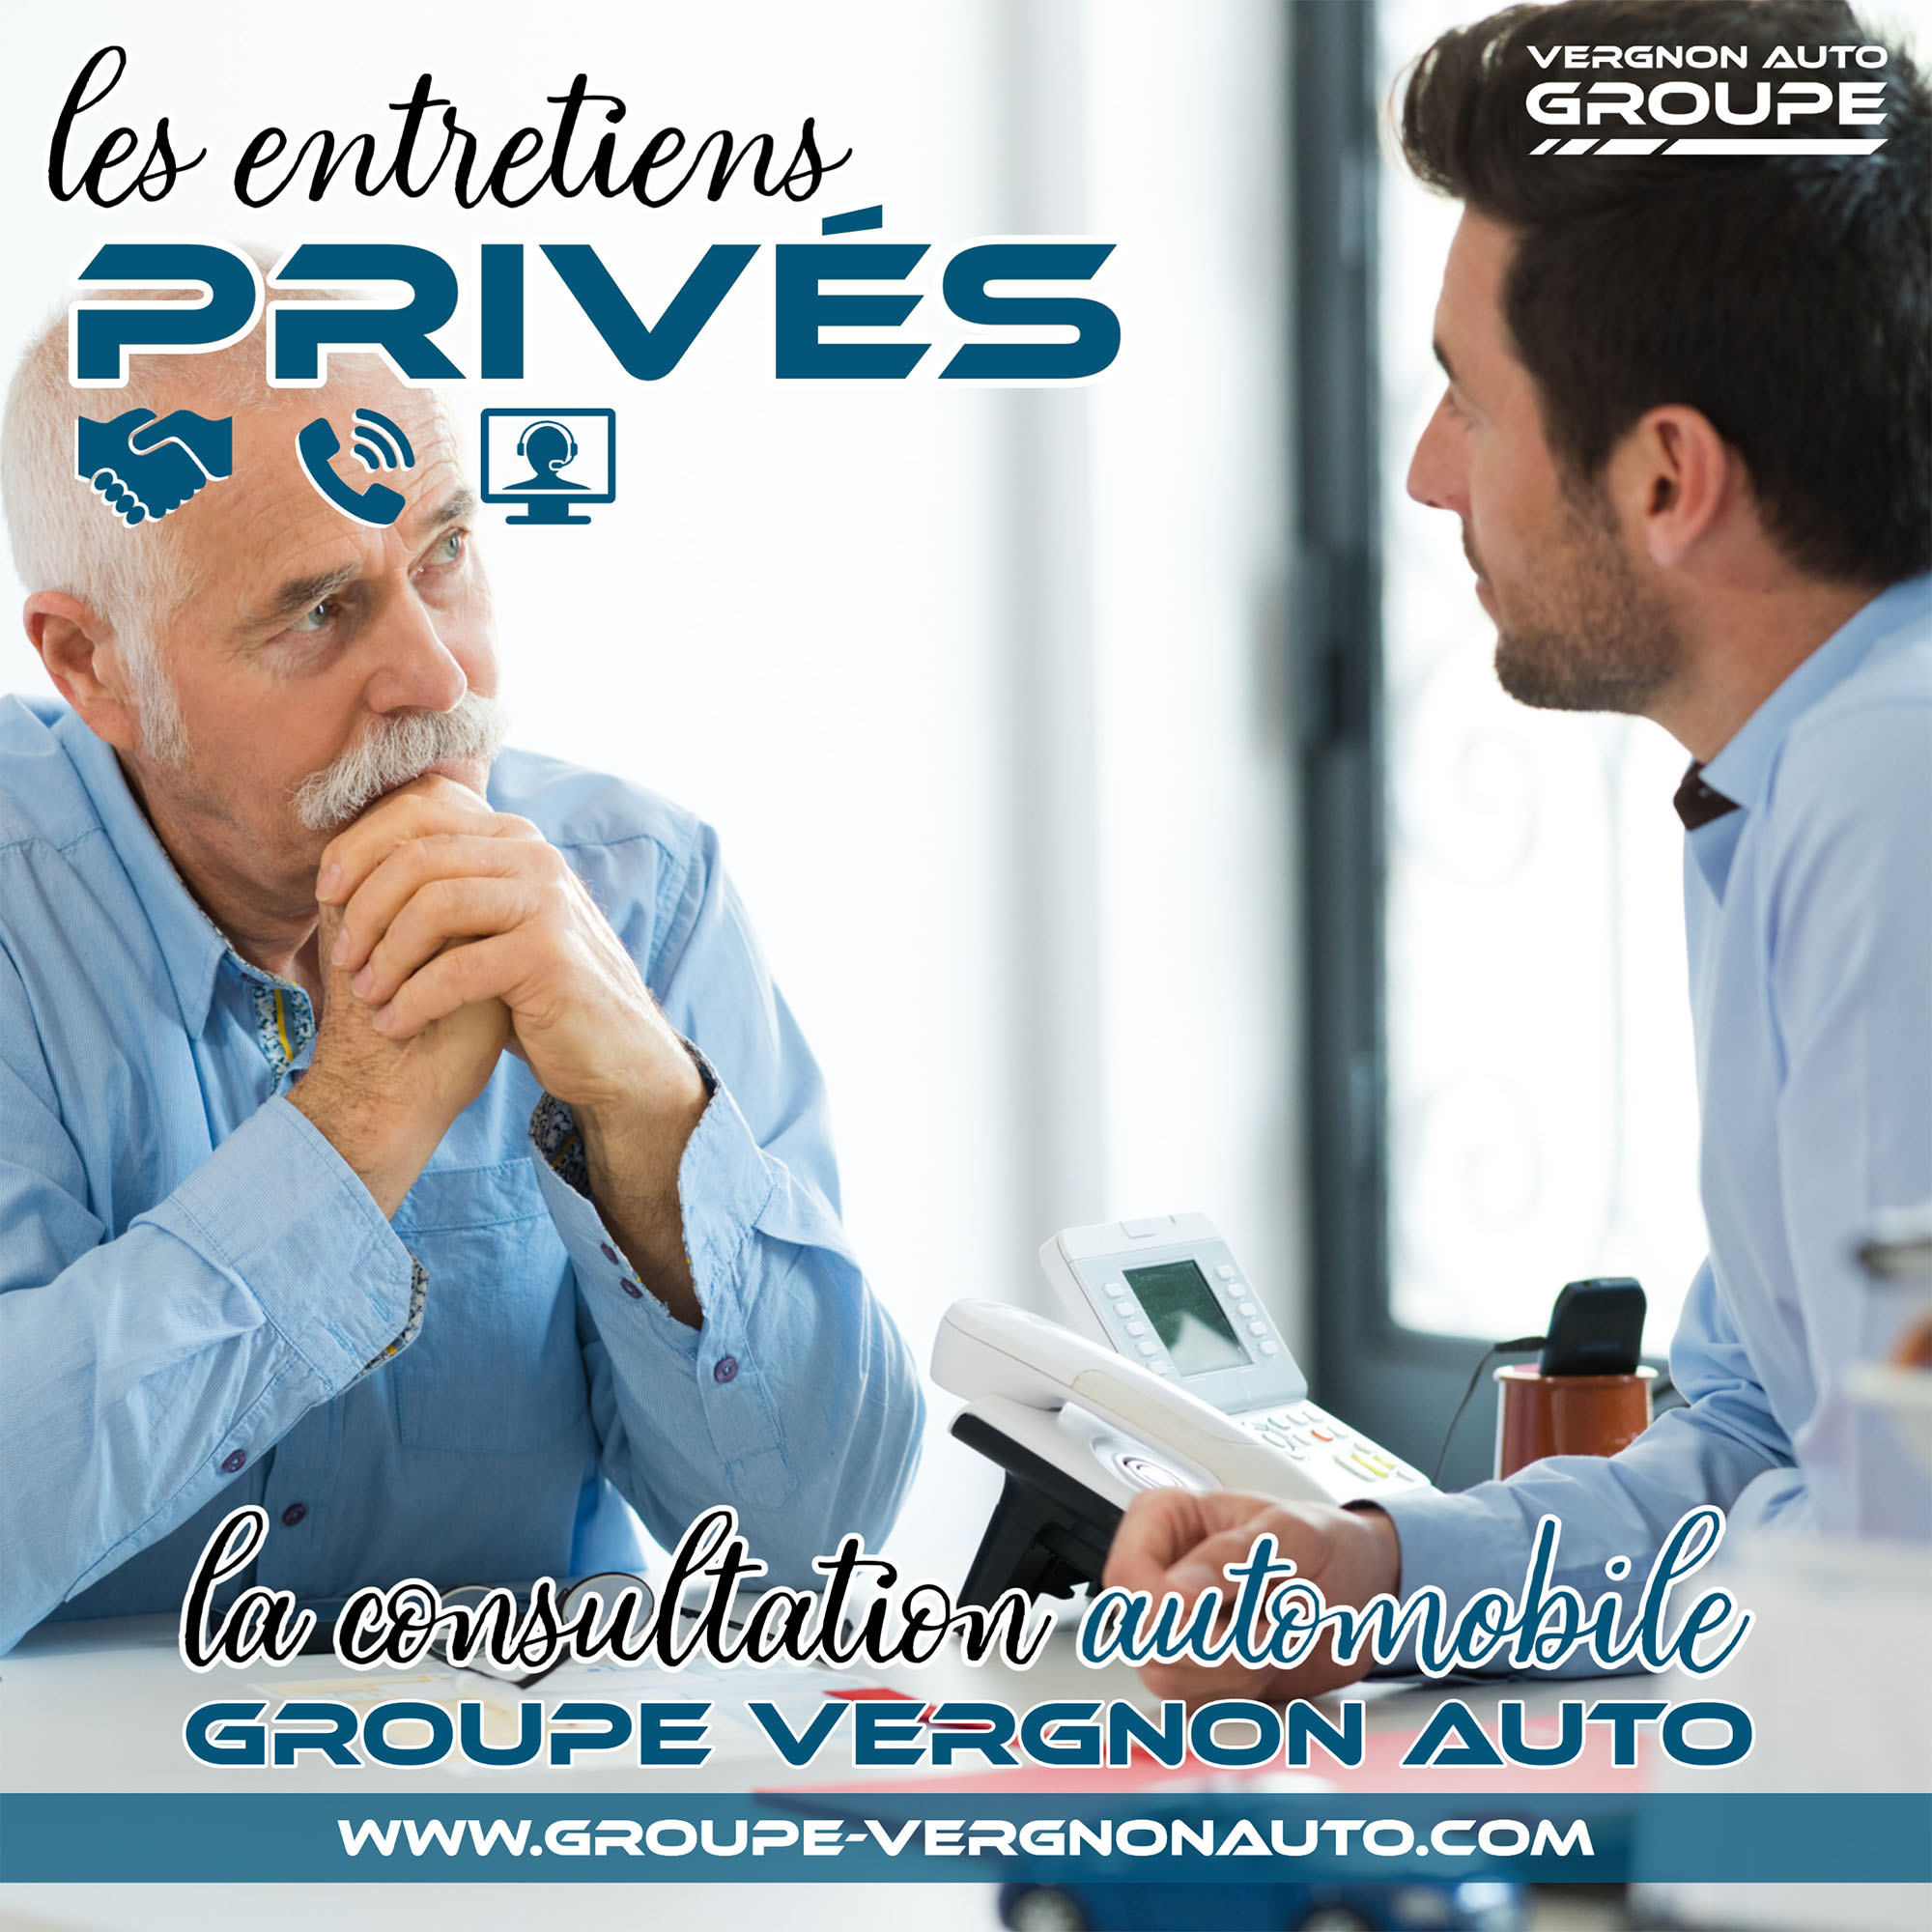 Les entretiens privés, la consultation automobile Groupe Vergnon Auto !